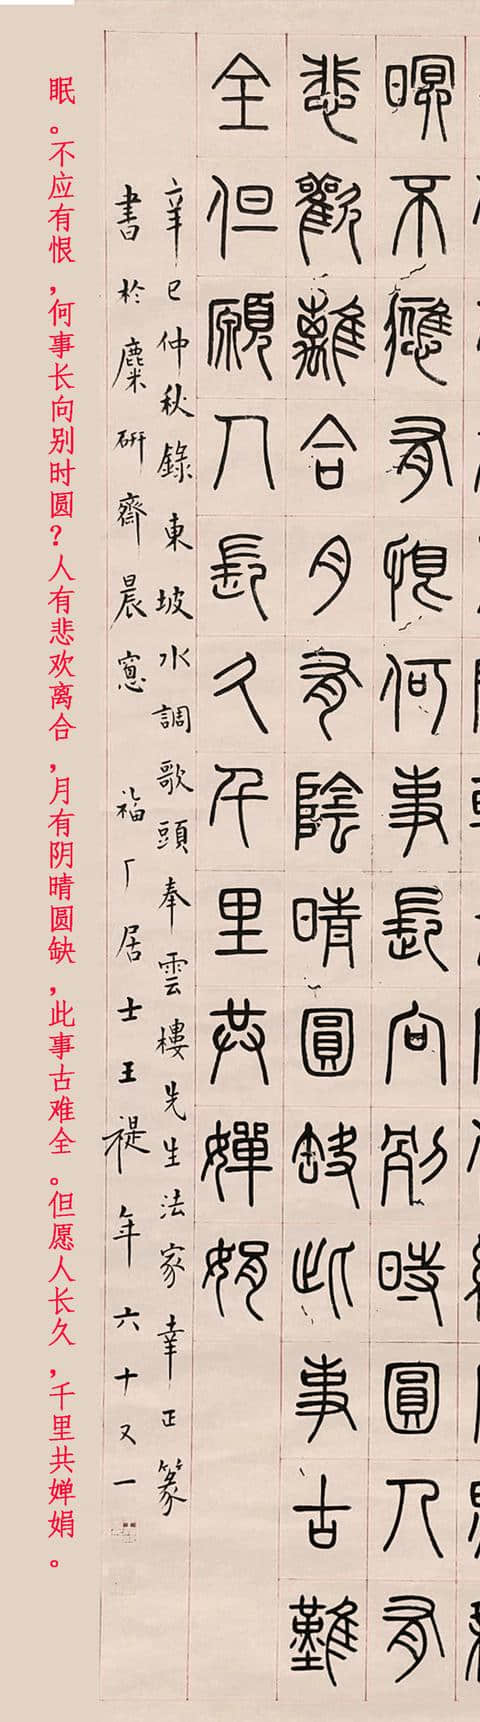 王福庵1941年篆书苏东坡《水调歌头·明月几时有》立轴